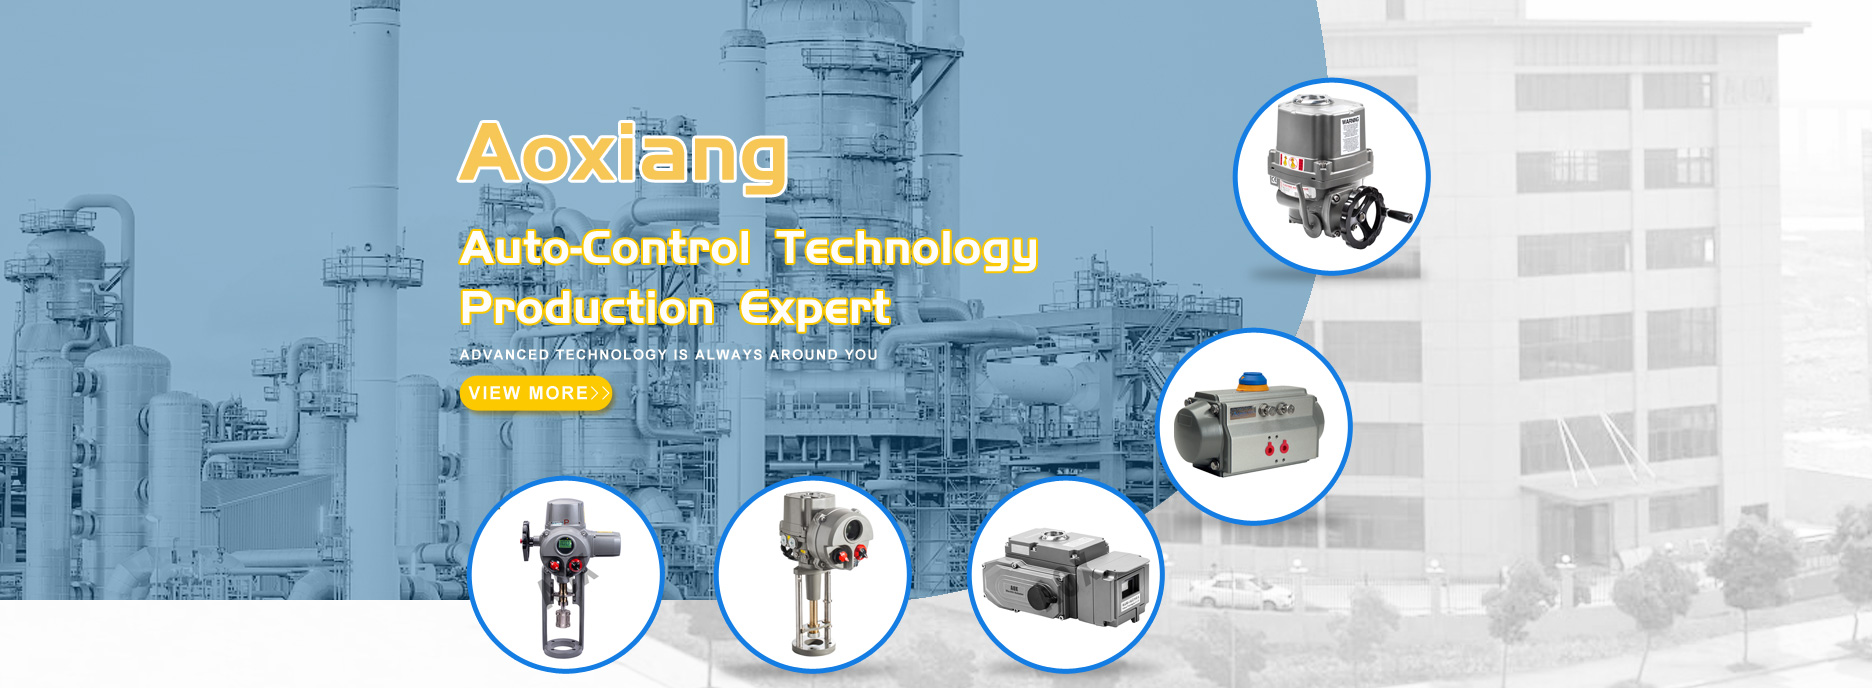 Aoxiang Auto-Control Teknolohiya Produksyon Dalubhasa